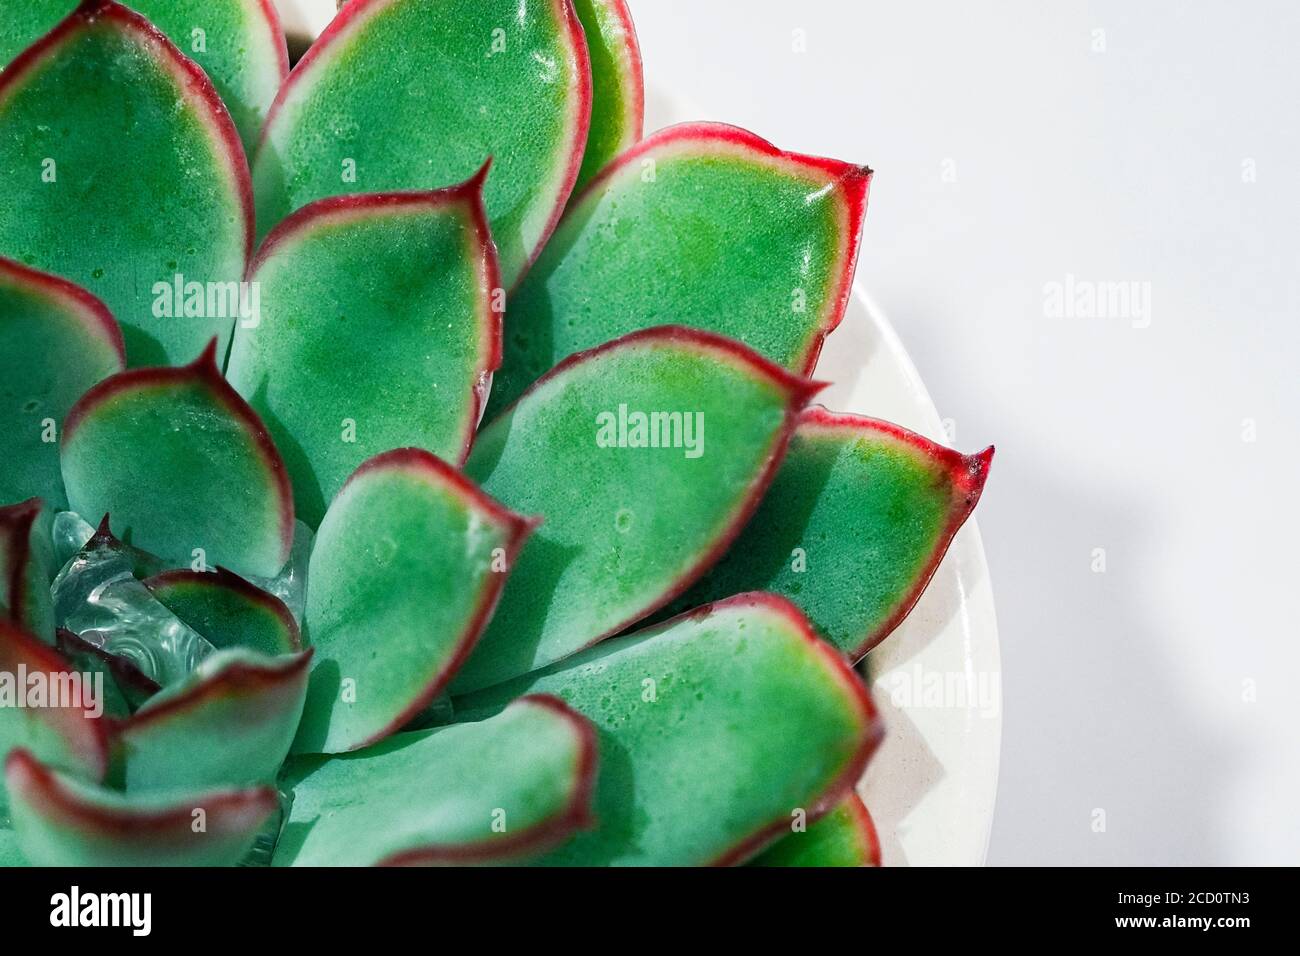 Echeveria Sukkulente Pflanze mit spikey grünen Blättern und roten Rändern Innen Stockfoto